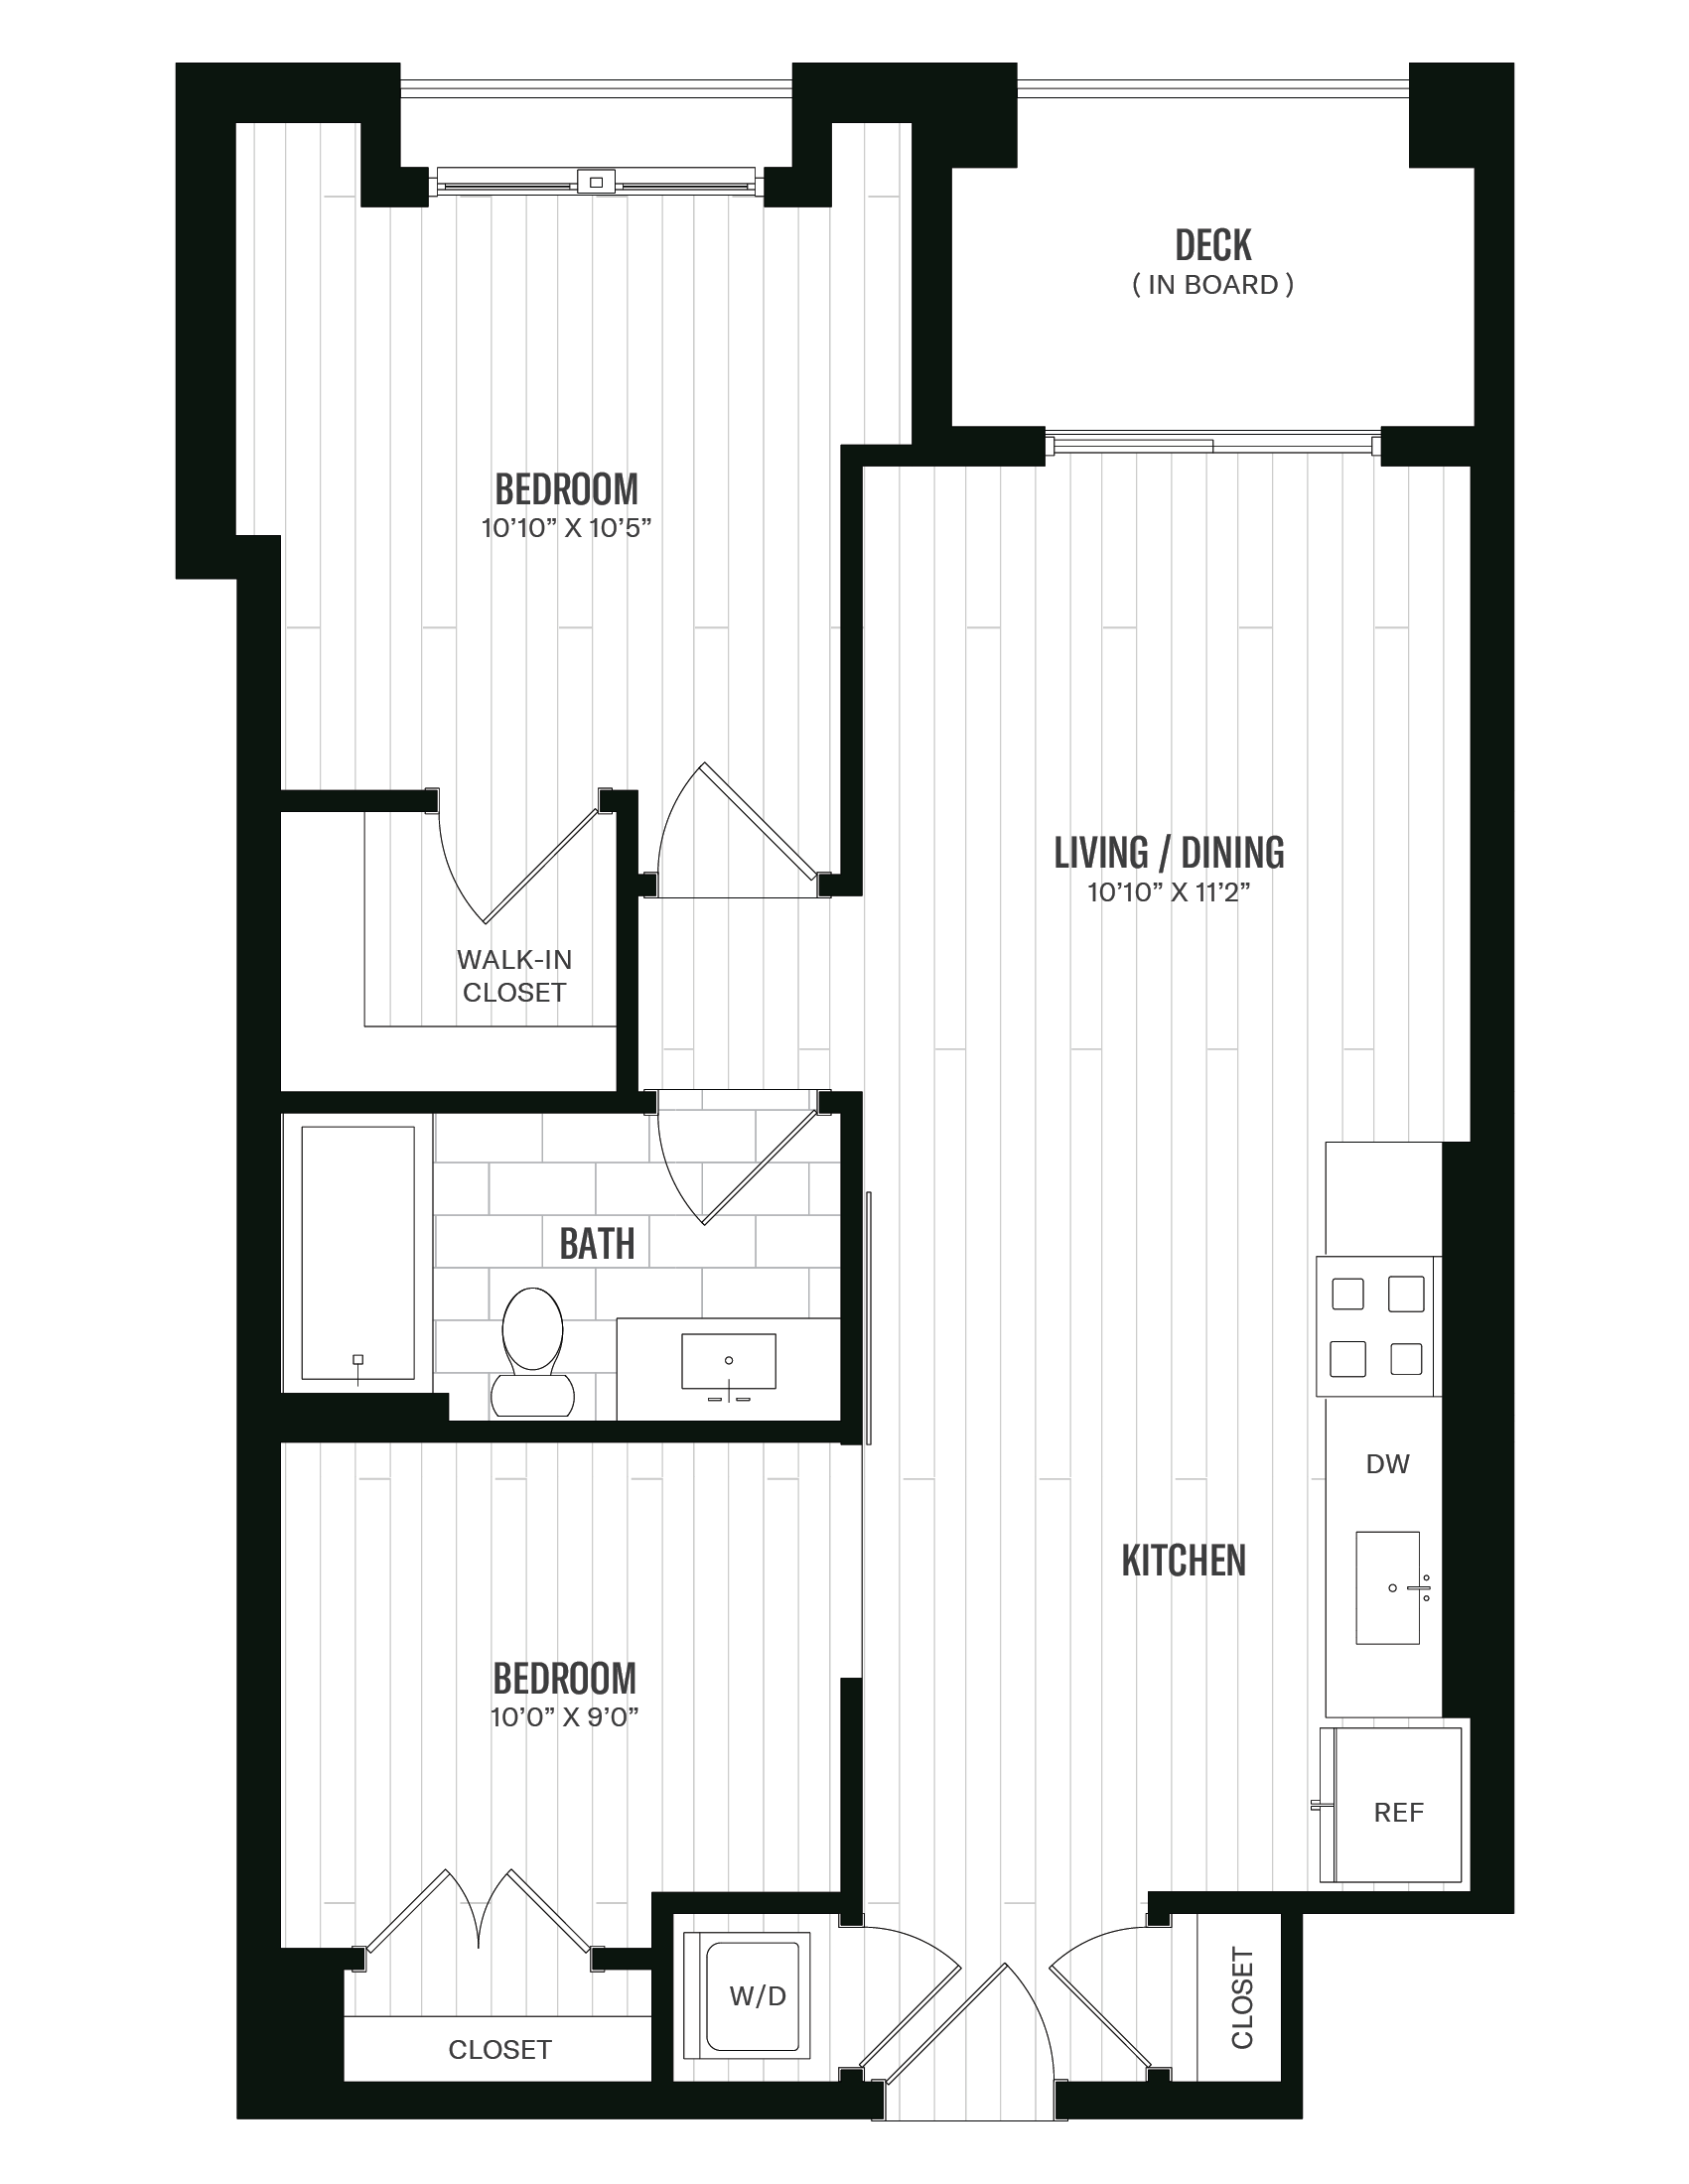 Floorplan image of unit 522